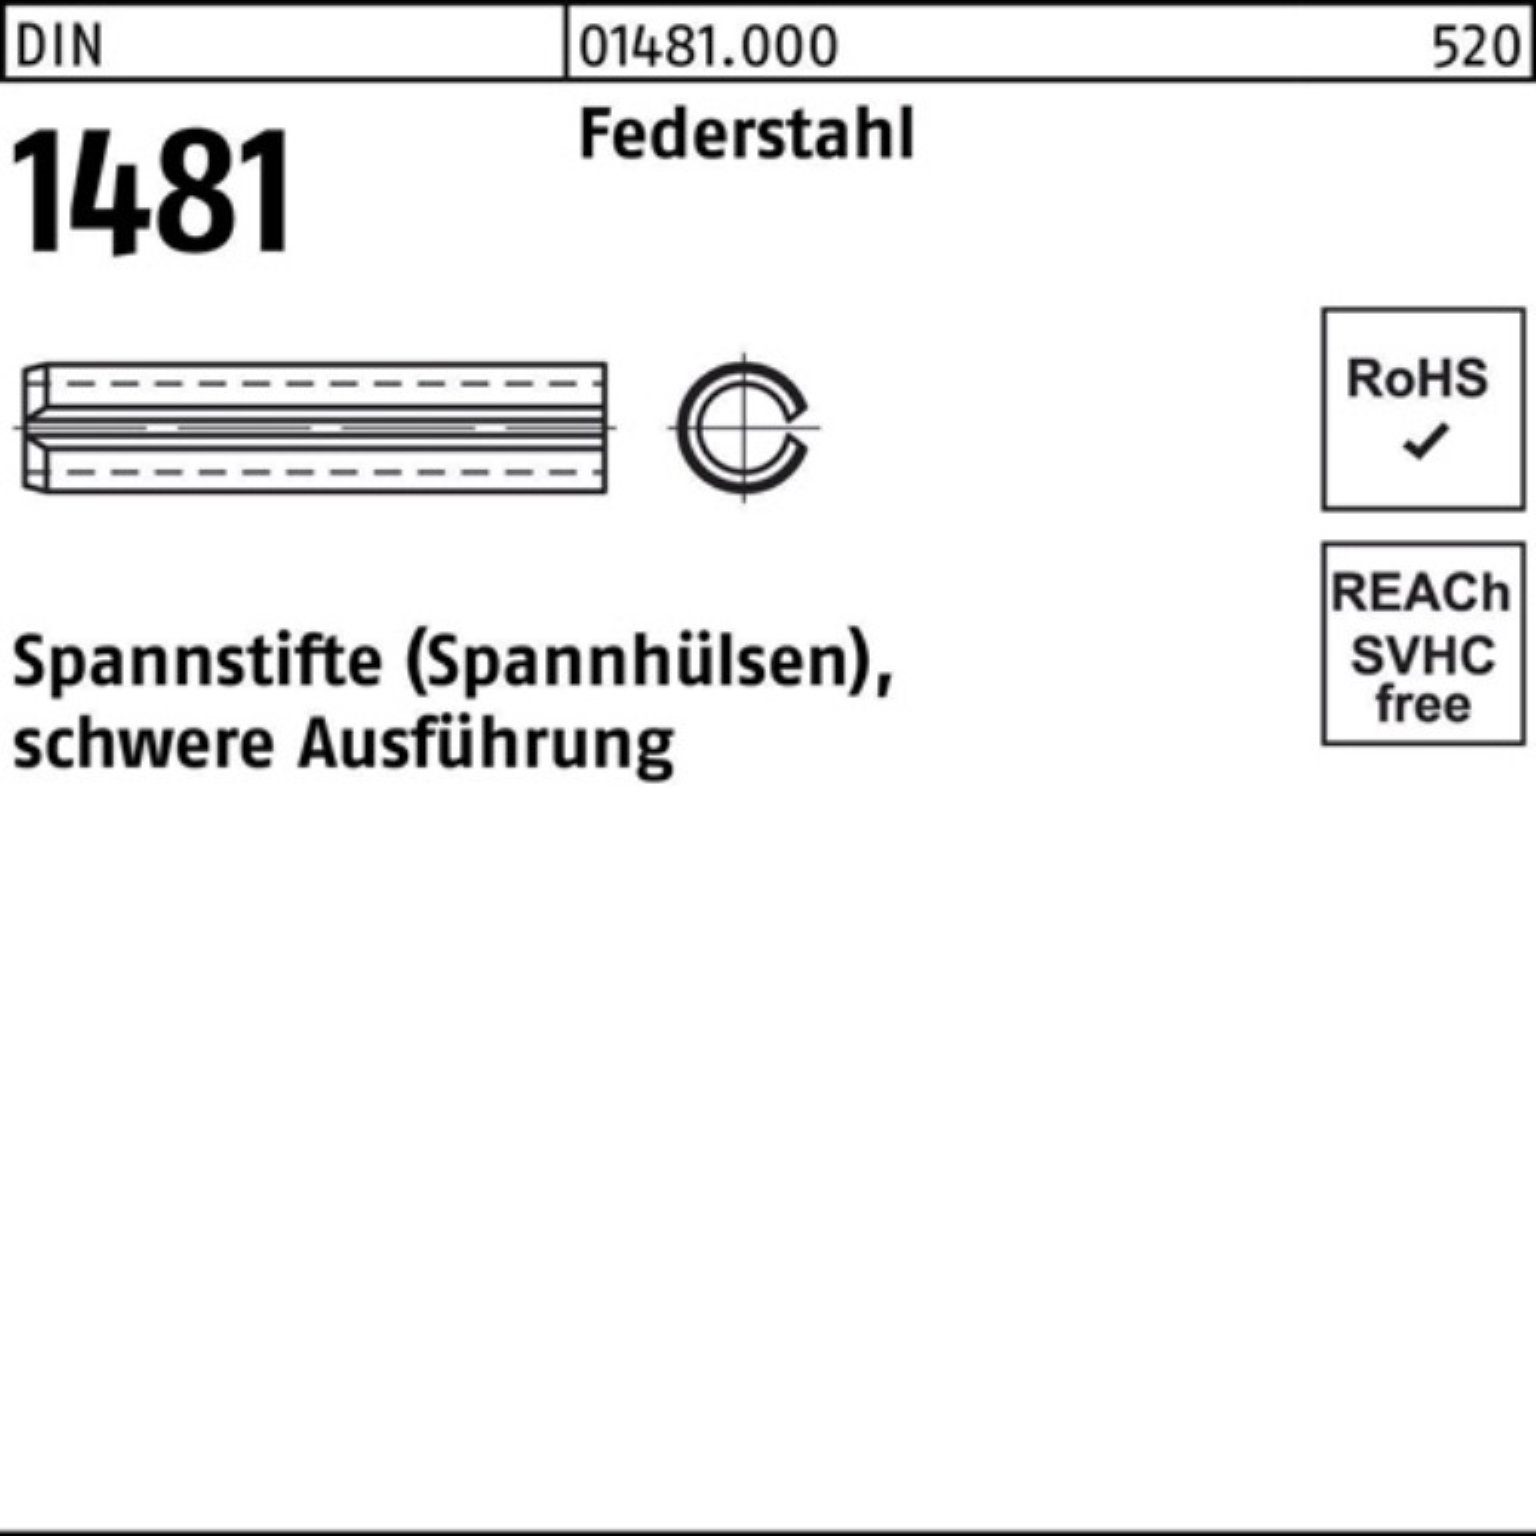 Reyher Spannstift 500er Pack Spannstift Ausführung 10x 14 5 schwere Federstahl 1481 DIN